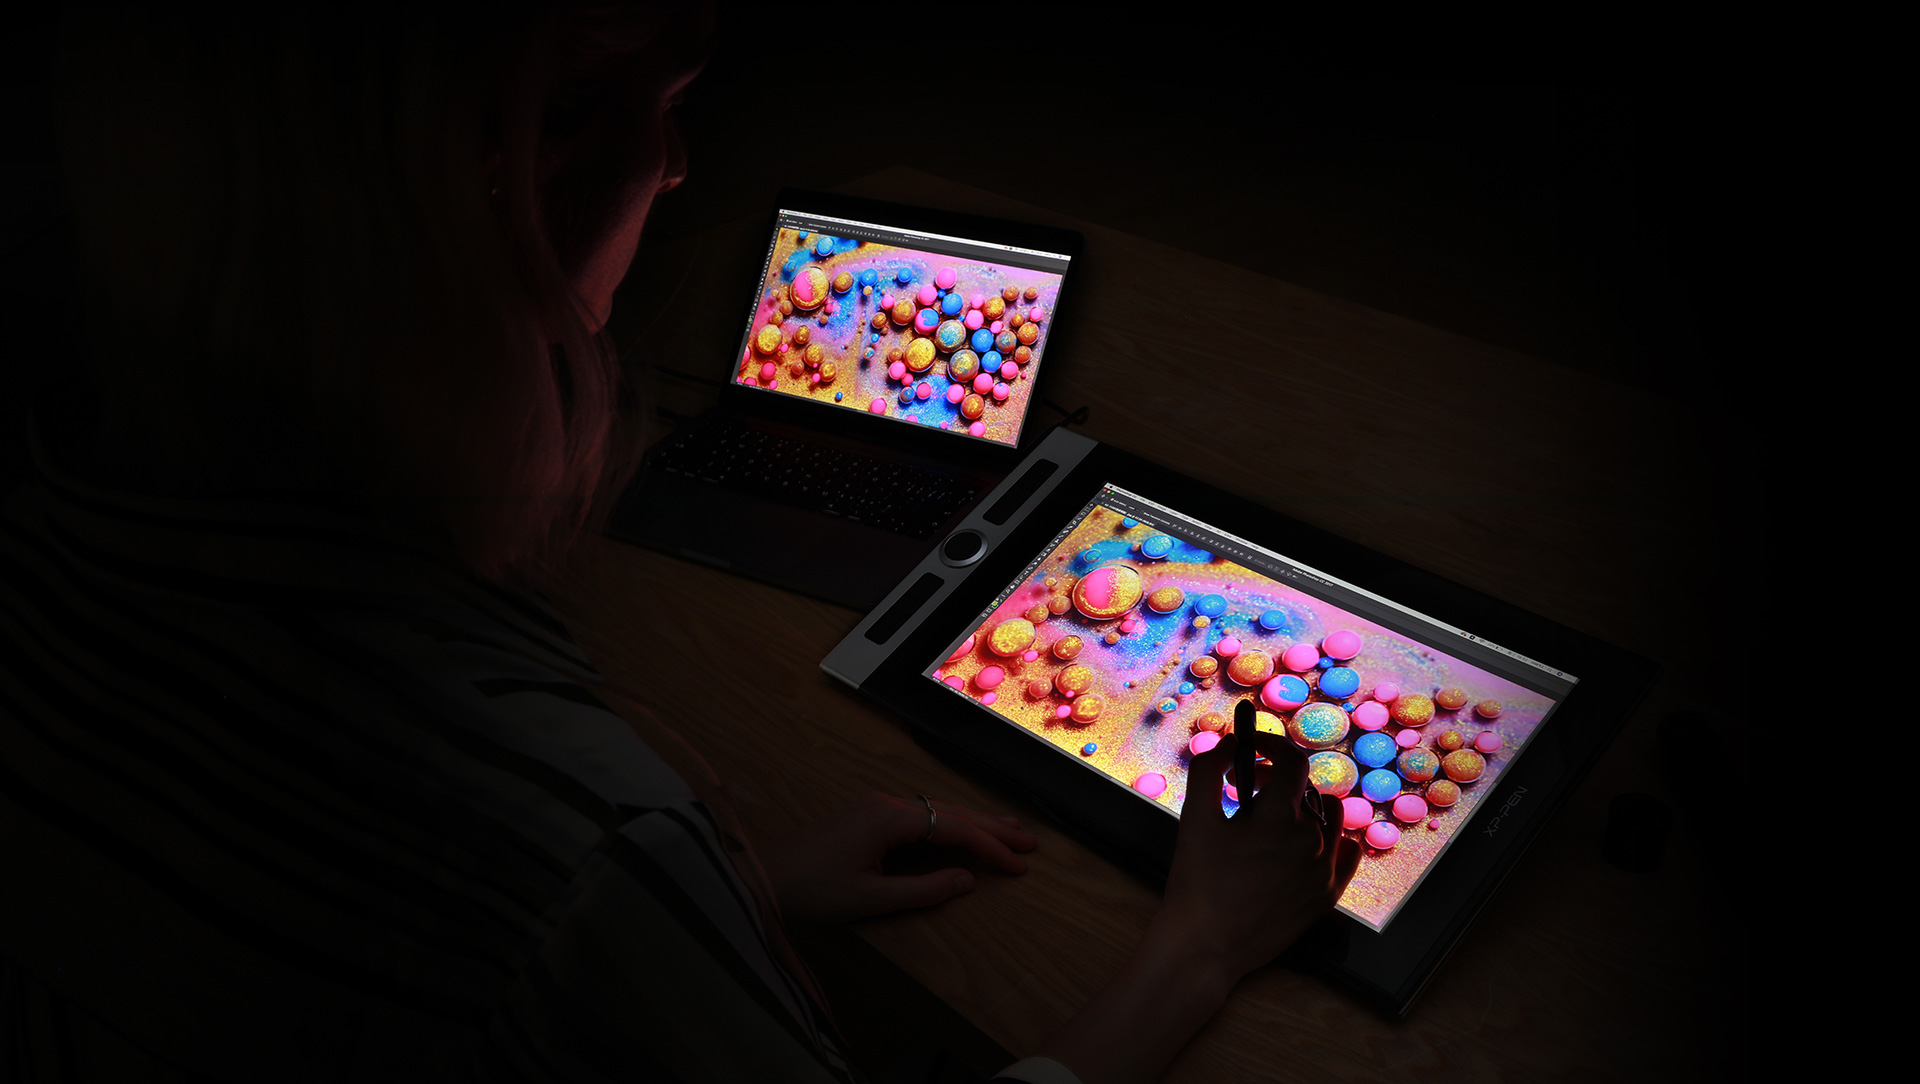 gamme de couleurs d’affichage 92 % Adobe® RGB de écran XP-Pen Innovator 16